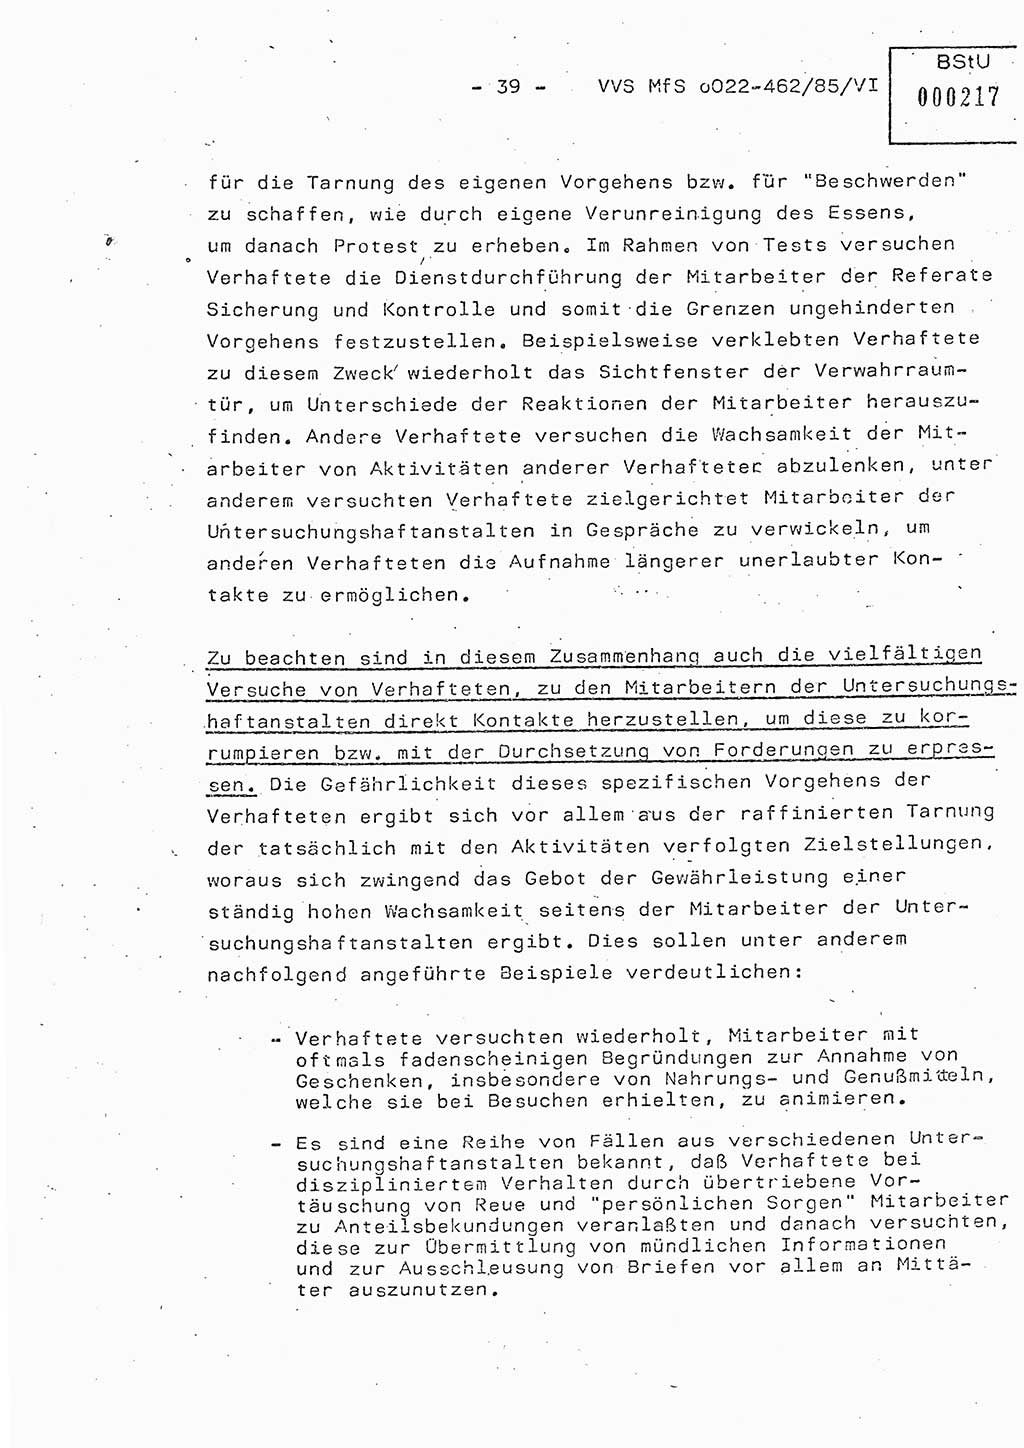 Der Untersuchungshaftvollzug im MfS, Schulungsmaterial Teil Ⅵ, Ministerium für Staatssicherheit [Deutsche Demokratische Republik (DDR)], Abteilung (Abt.) ⅩⅣ, Vertrauliche Verschlußsache (VVS) o022-462/85/Ⅵ, Berlin 1985, Seite 39 (Sch.-Mat. Ⅵ MfS DDR Abt. ⅩⅣ VVS o022-462/85/Ⅵ 1985, S. 39)